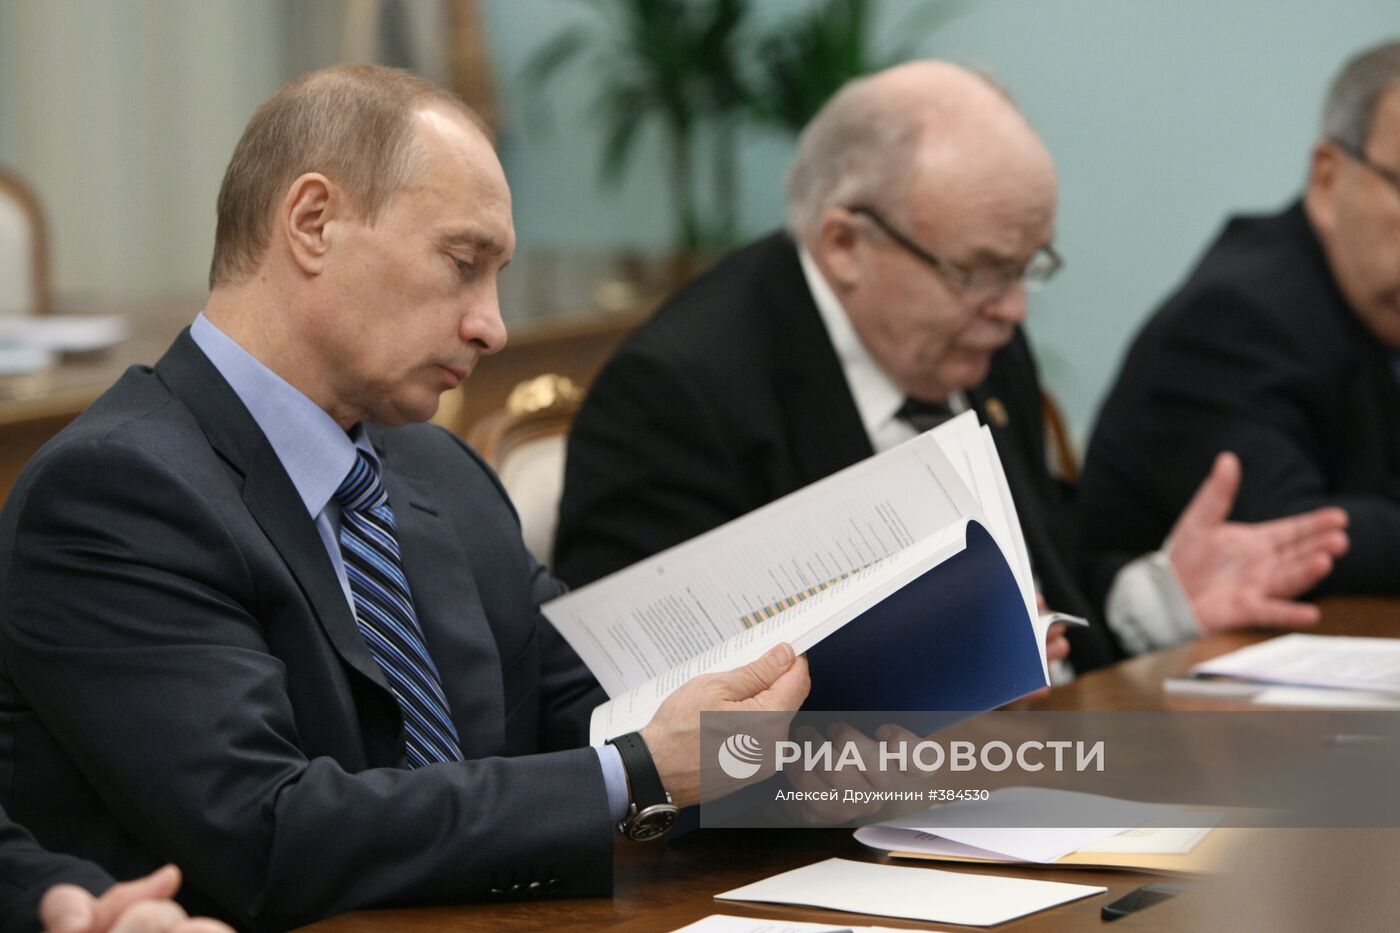 В.Путин провел рабочую встречу в Доме правительства РФ